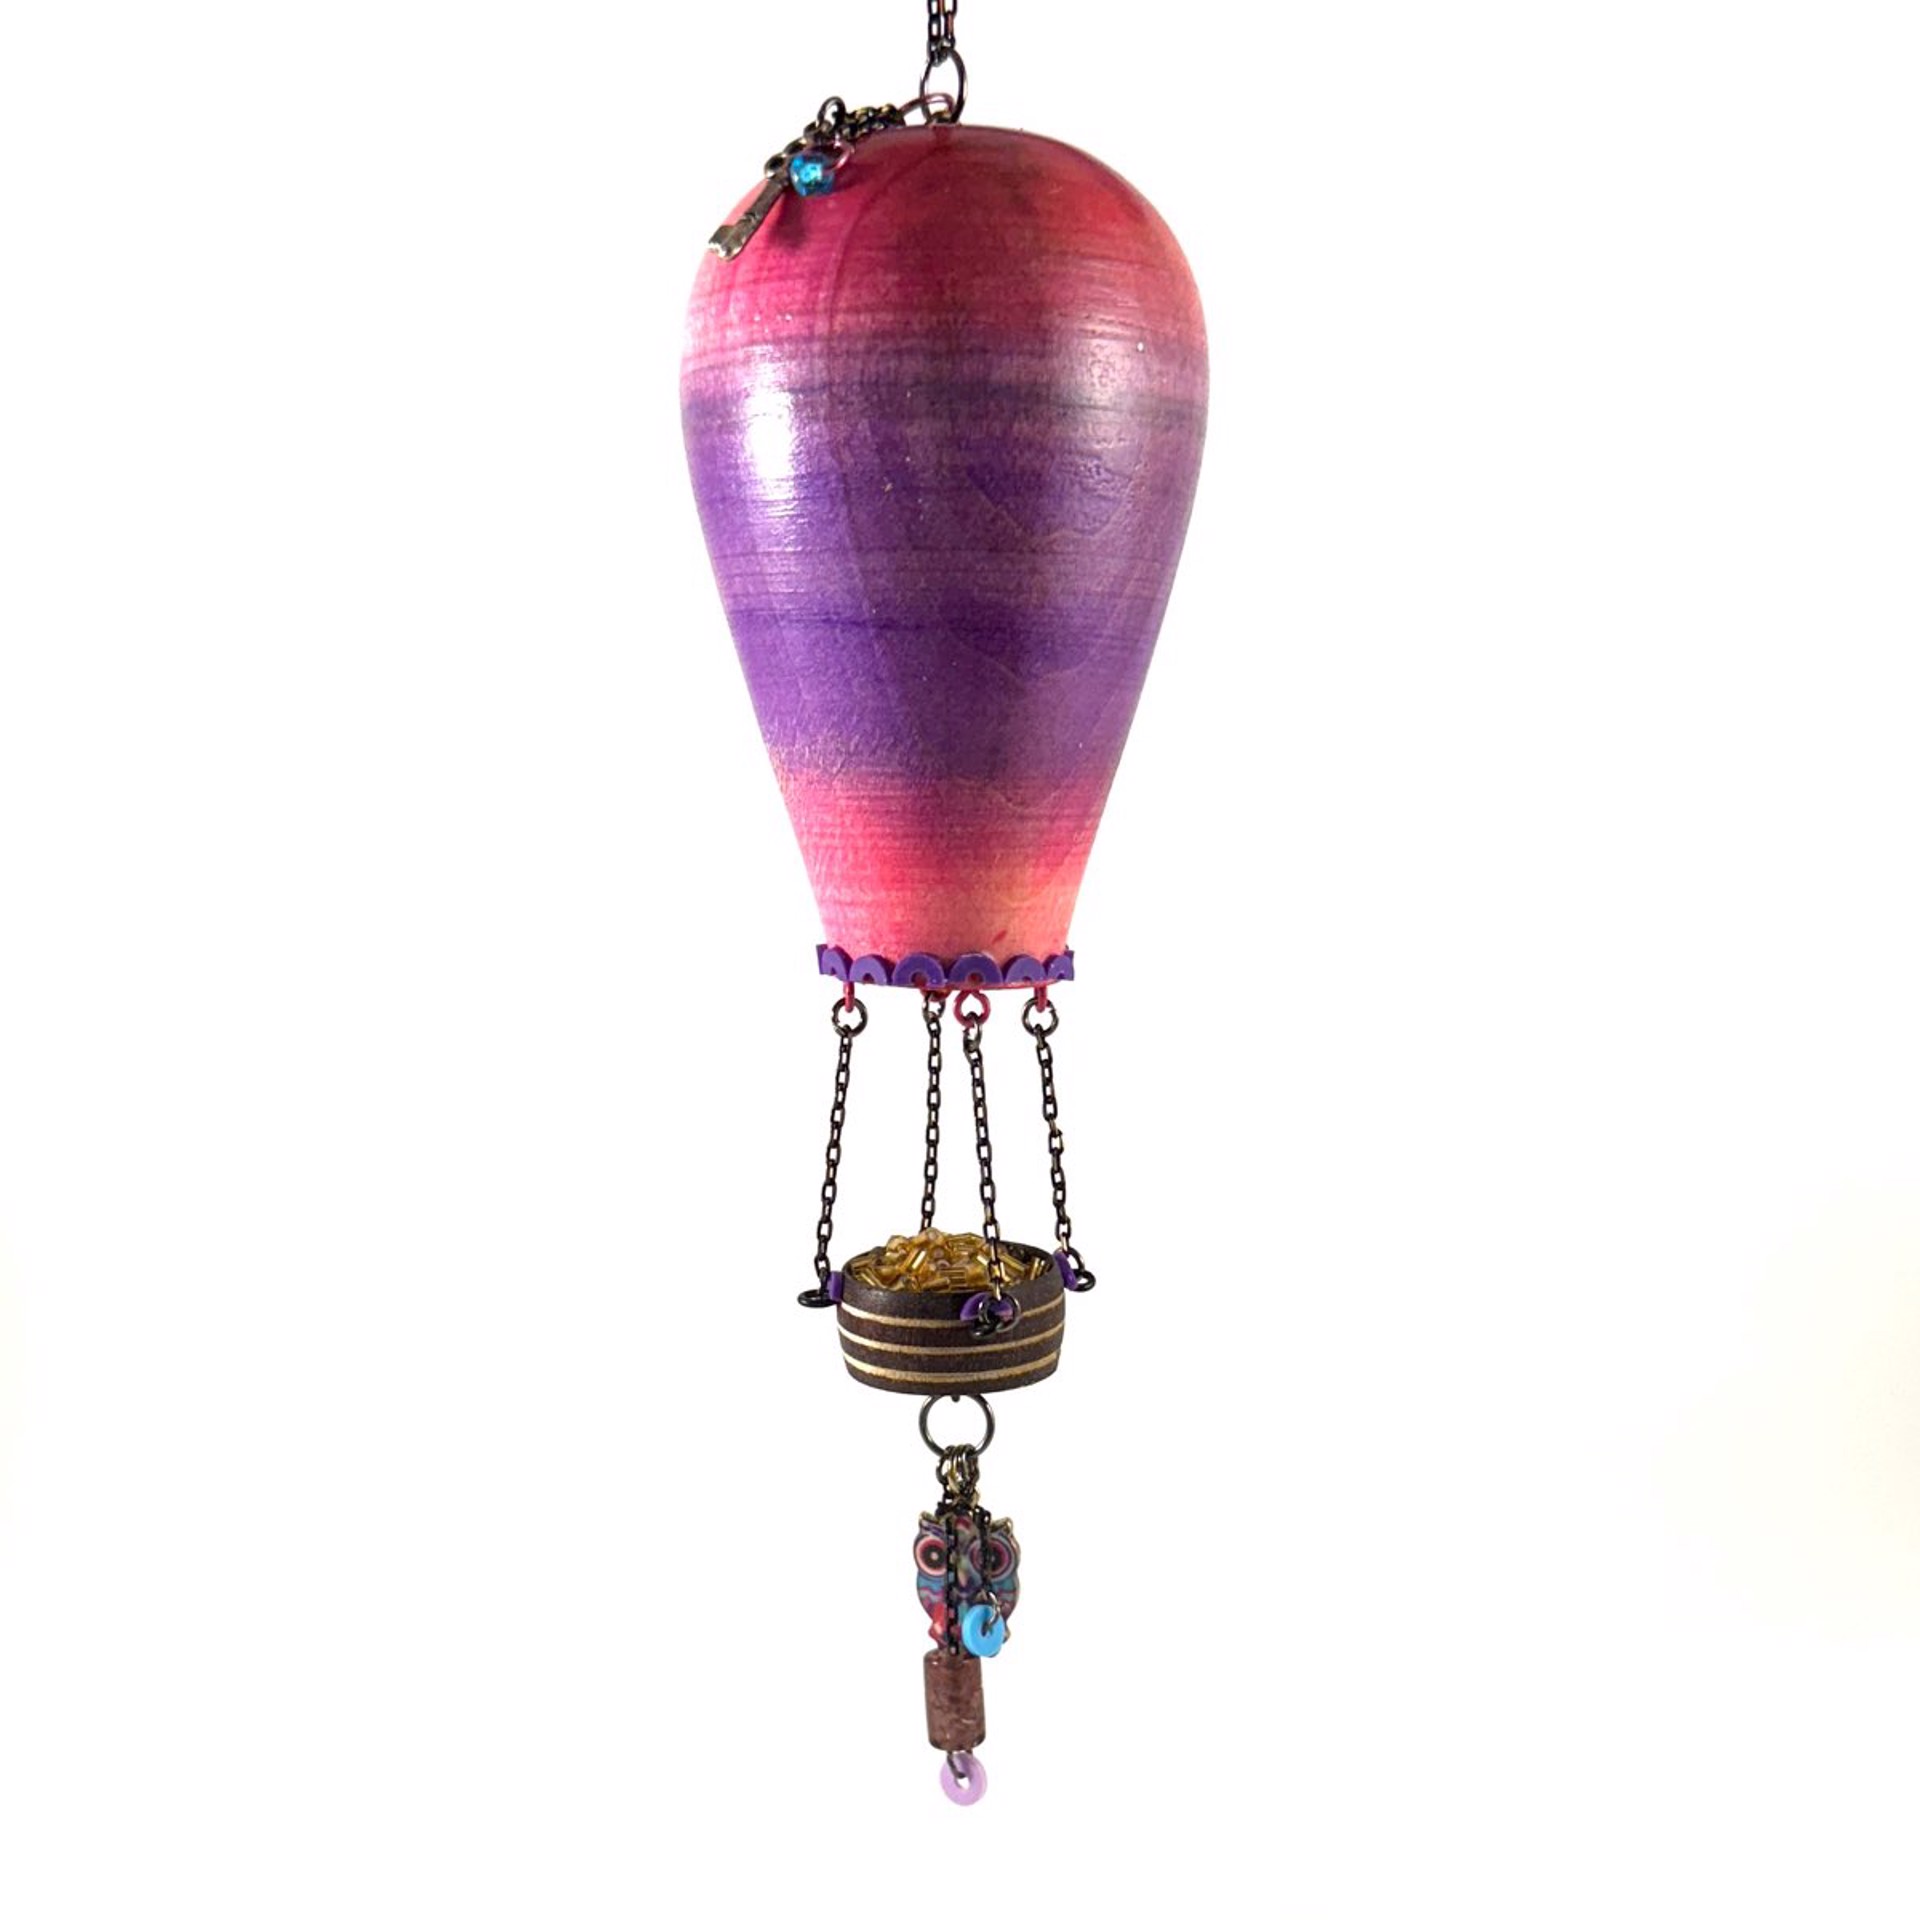 Whimsical Hot Air Balloon Ornament MT23-18 by Marc Tannenbaum